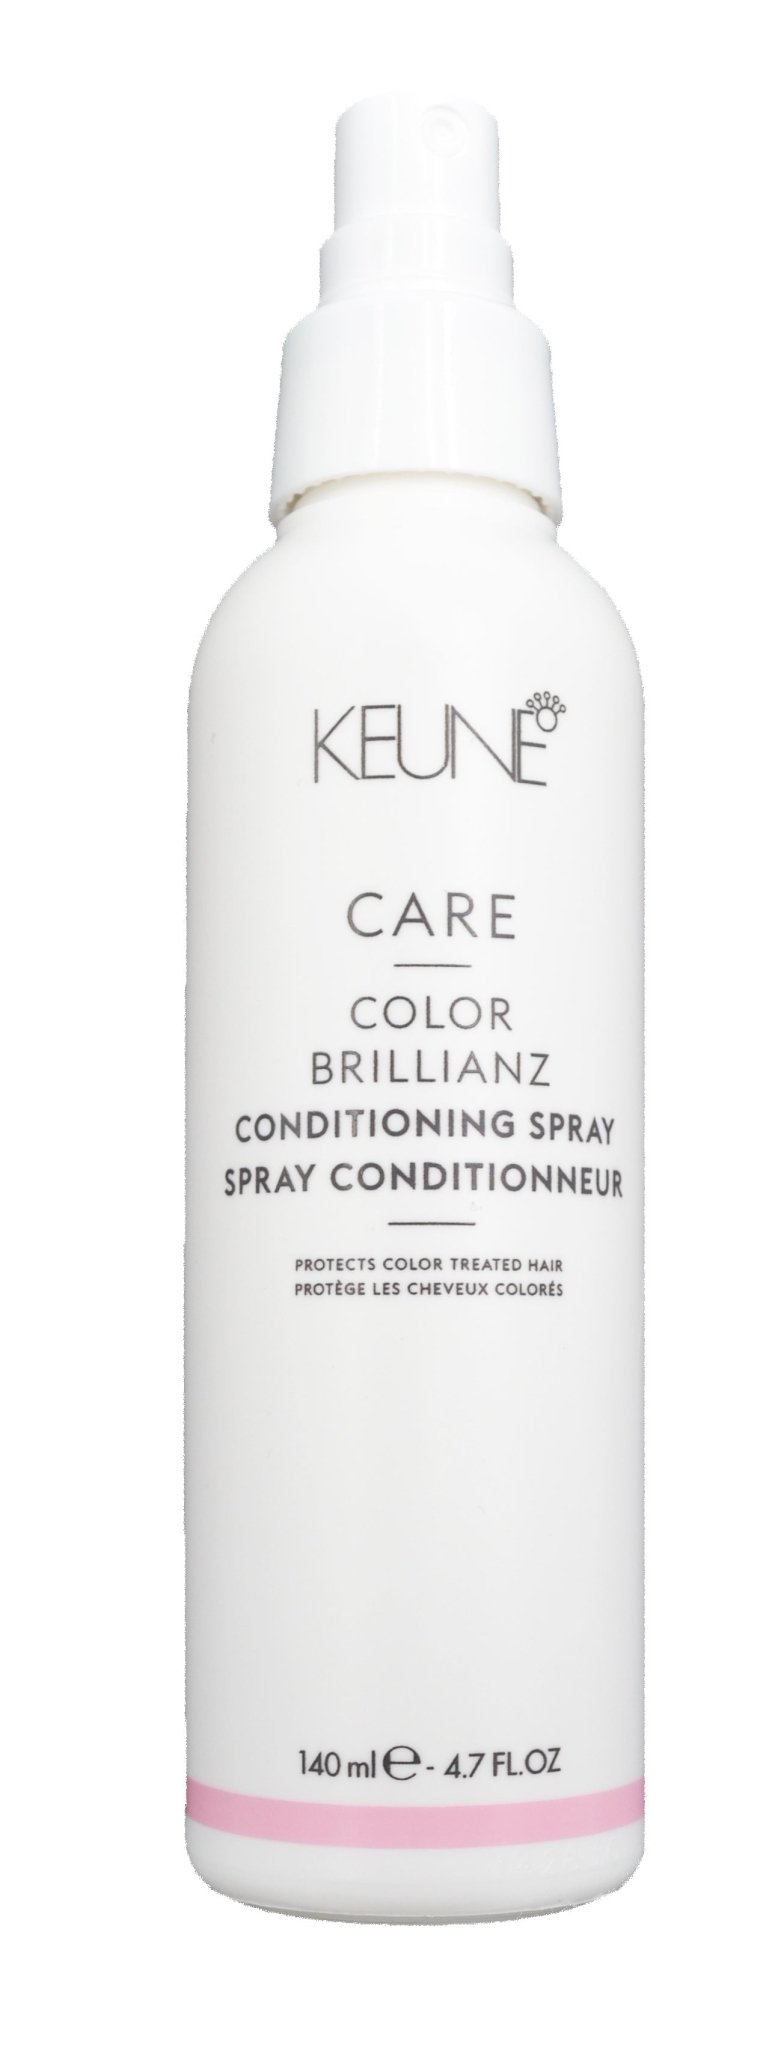 Keune Color Brillianz Conditioning Spray 140Ml - AllurebeautypkKeune Color Brillianz Conditioning Spray 140Ml